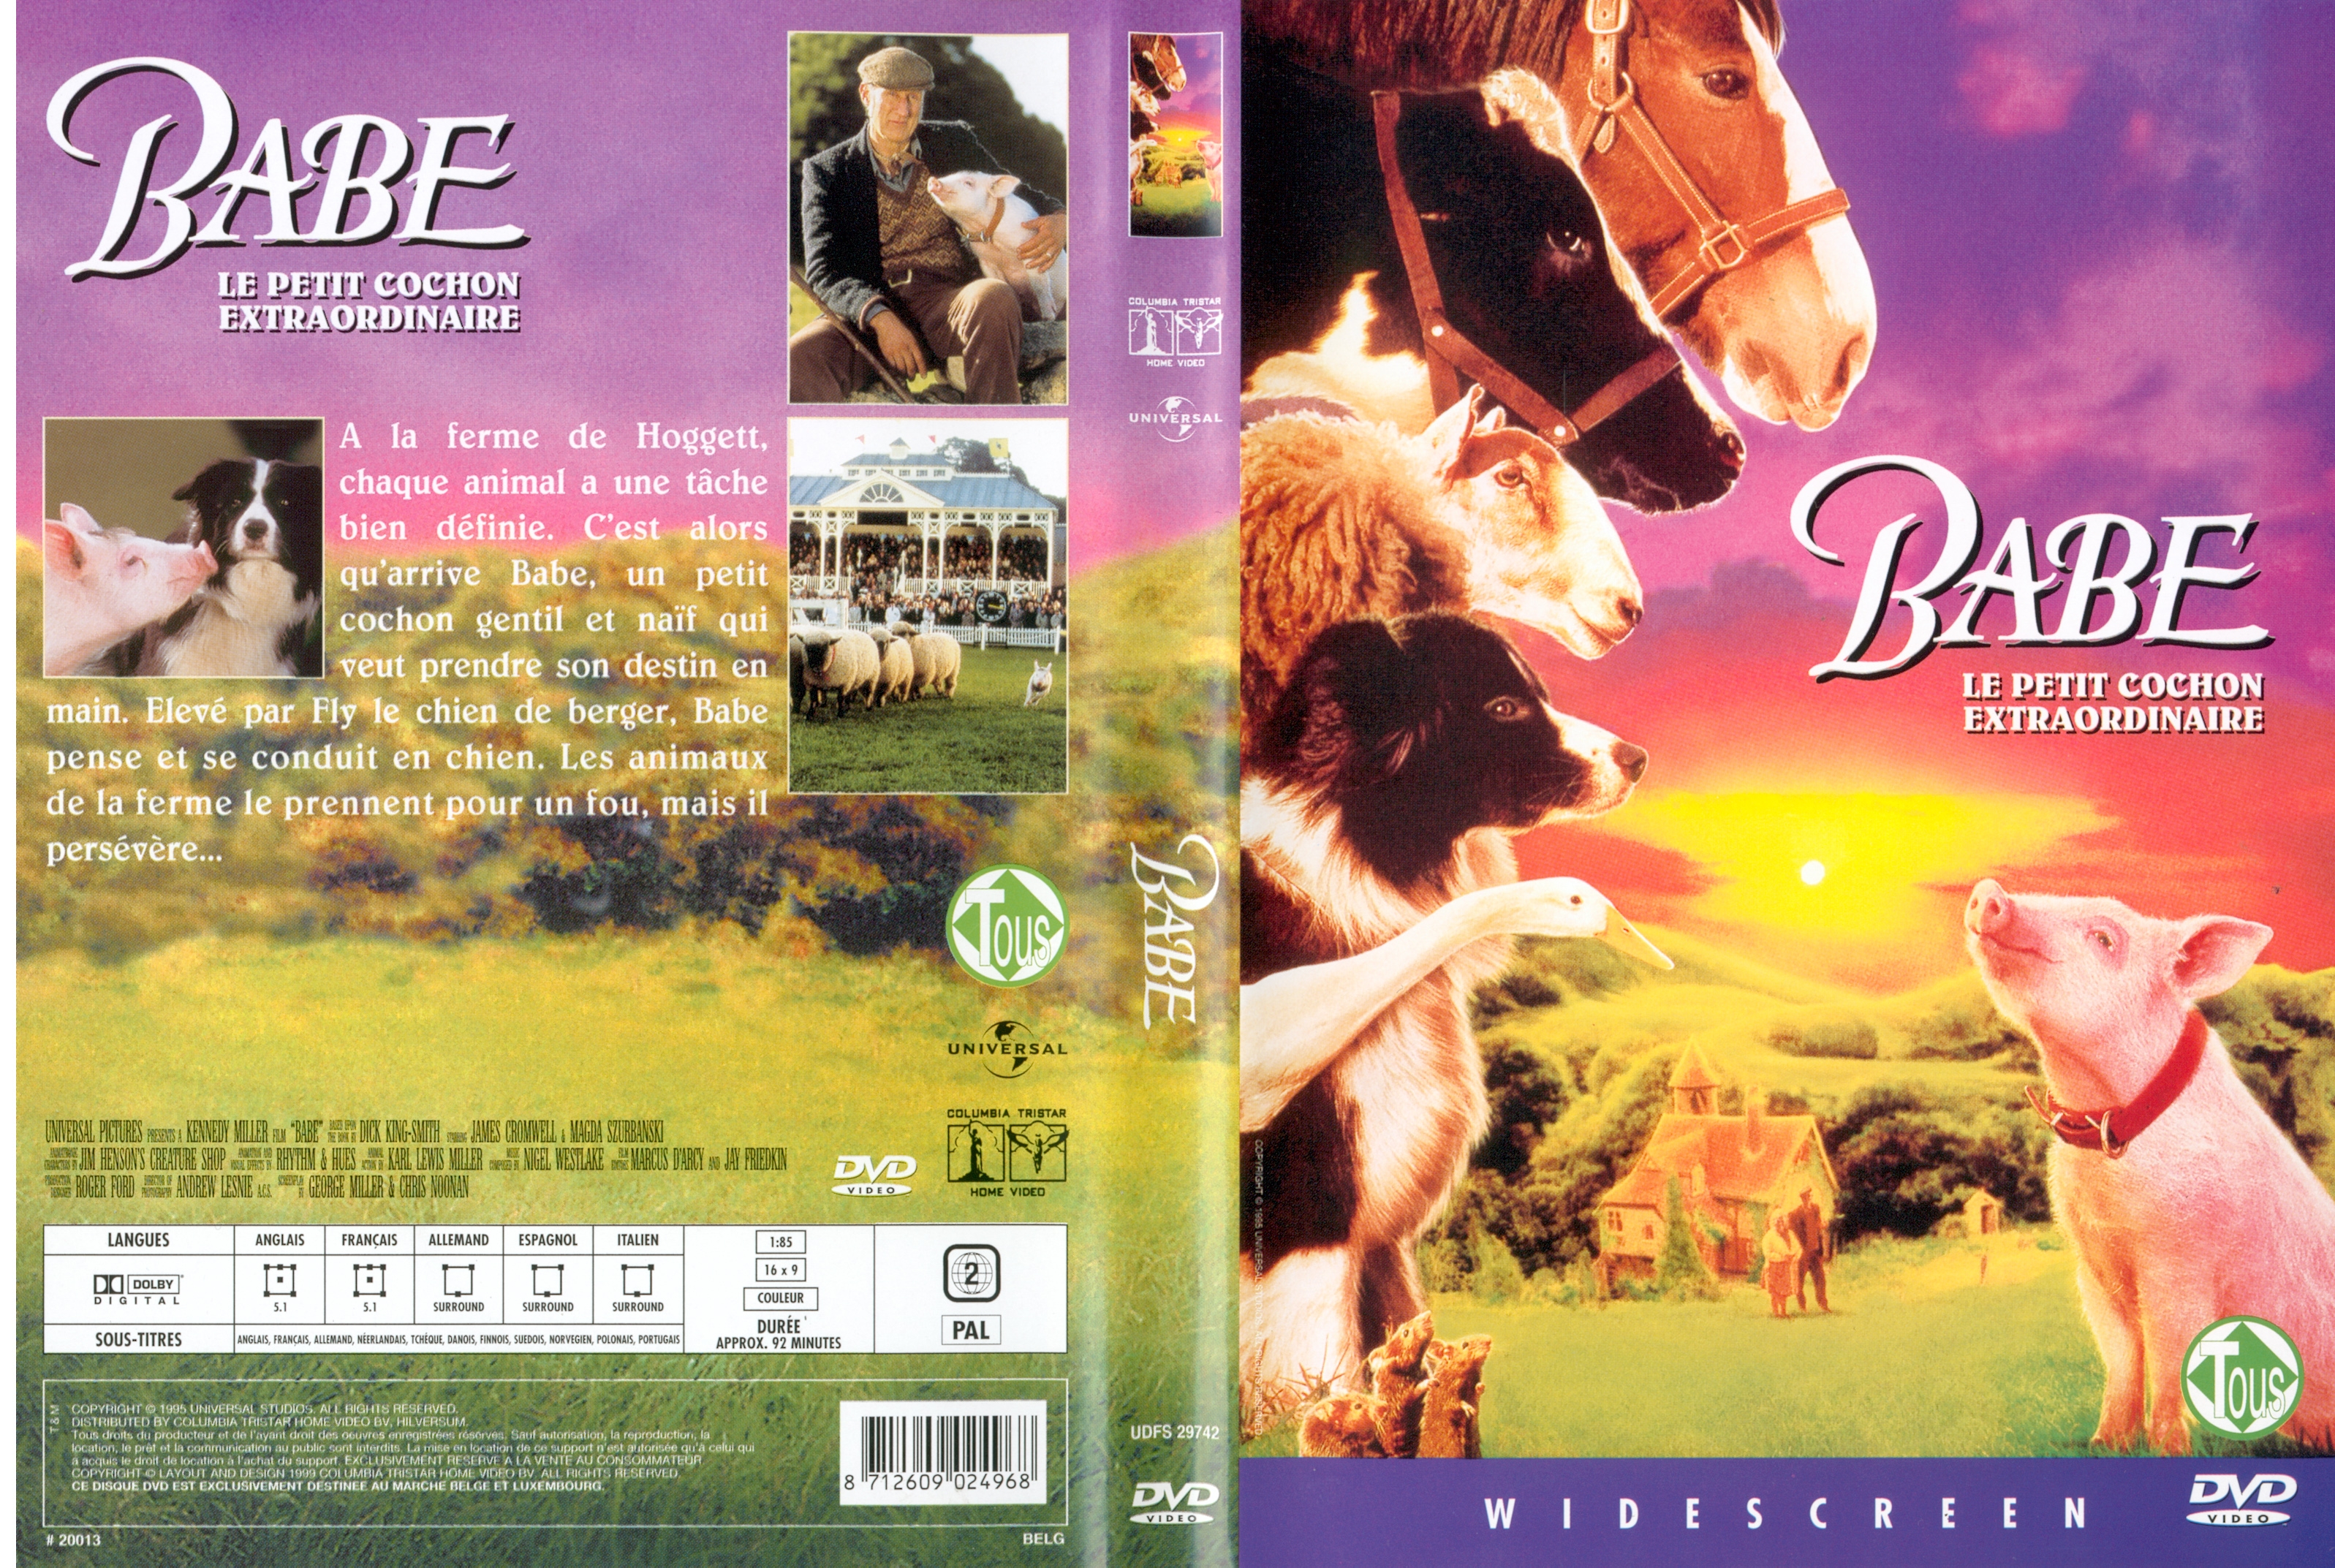 Jaquette DVD Babe le cochon extraordinaire v2